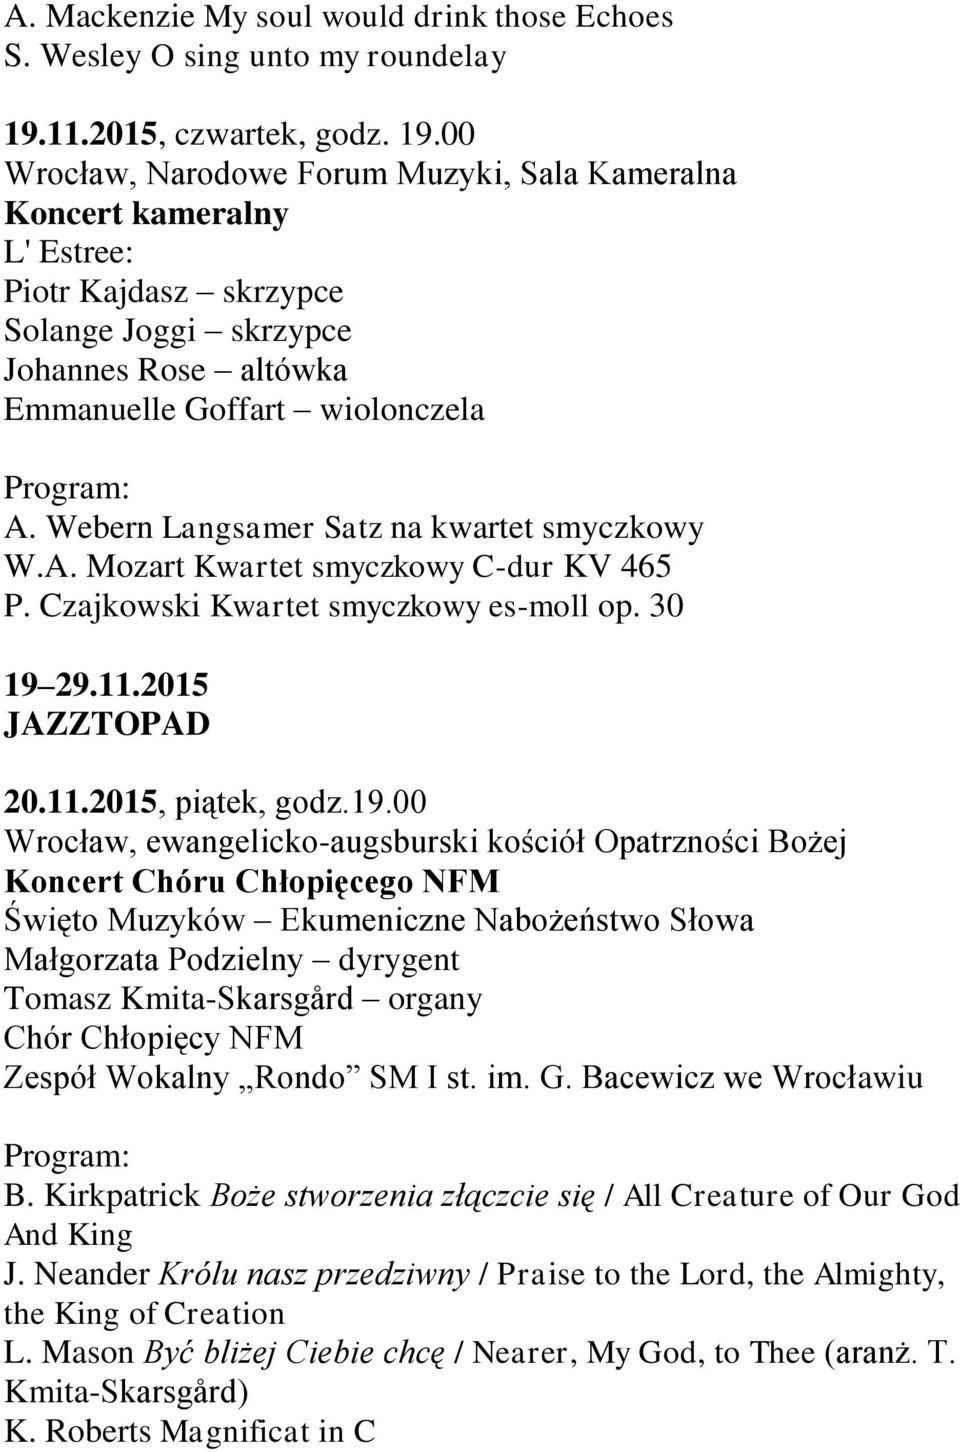 Webern Langsamer Satz na kwartet smyczkowy W.A. Mozart Kwartet smyczkowy C-dur KV 465 P. Czajkowski Kwartet smyczkowy es-moll op. 30 19 